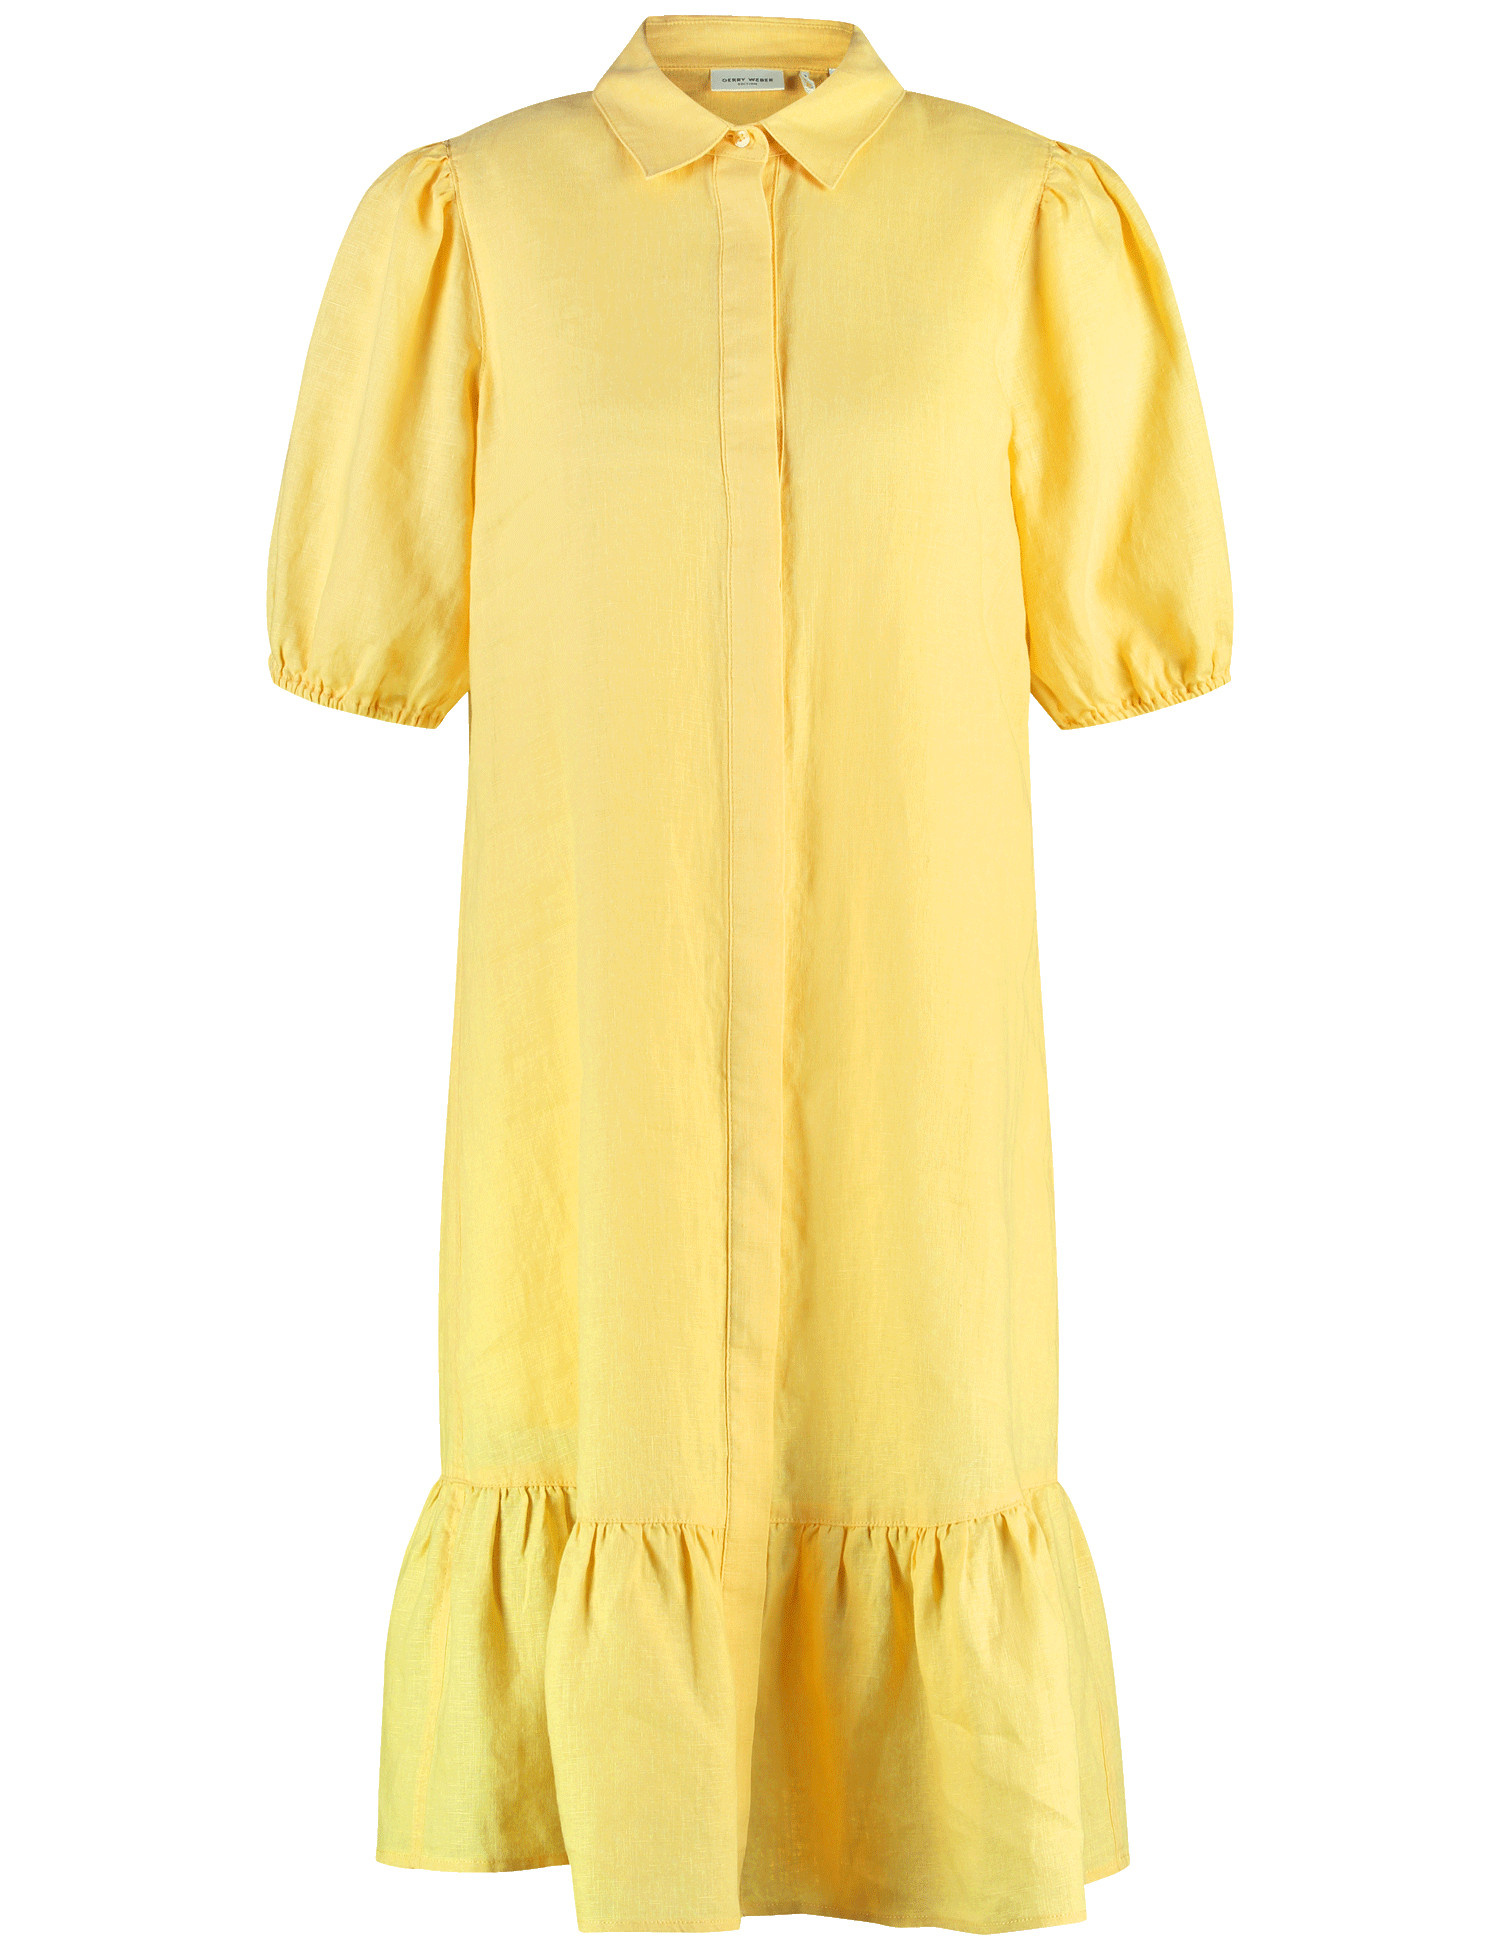 GERRY WEBER Damen Modisches Blusenkleid aus Leinen Halber Arm Hemdkragen Gelb, 46 von Gerry Weber